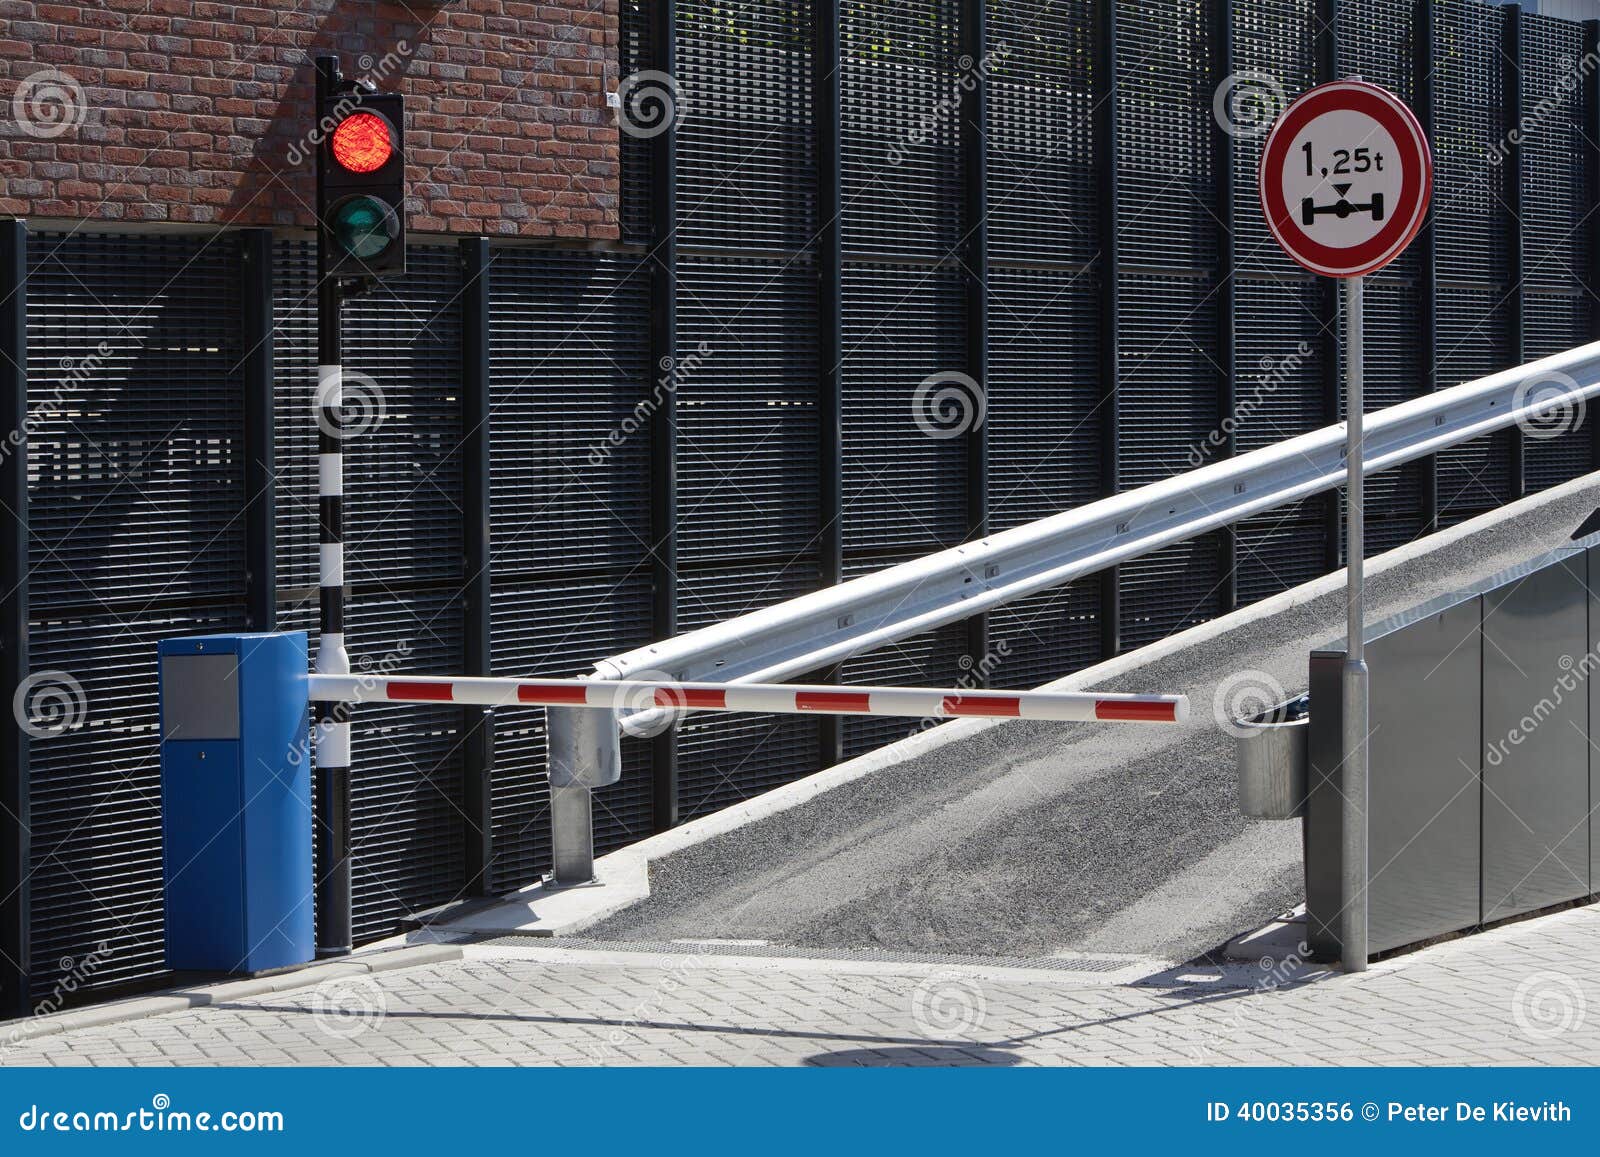 Parking garage ramp stock photo. Image of warning, guardrail - 40035356